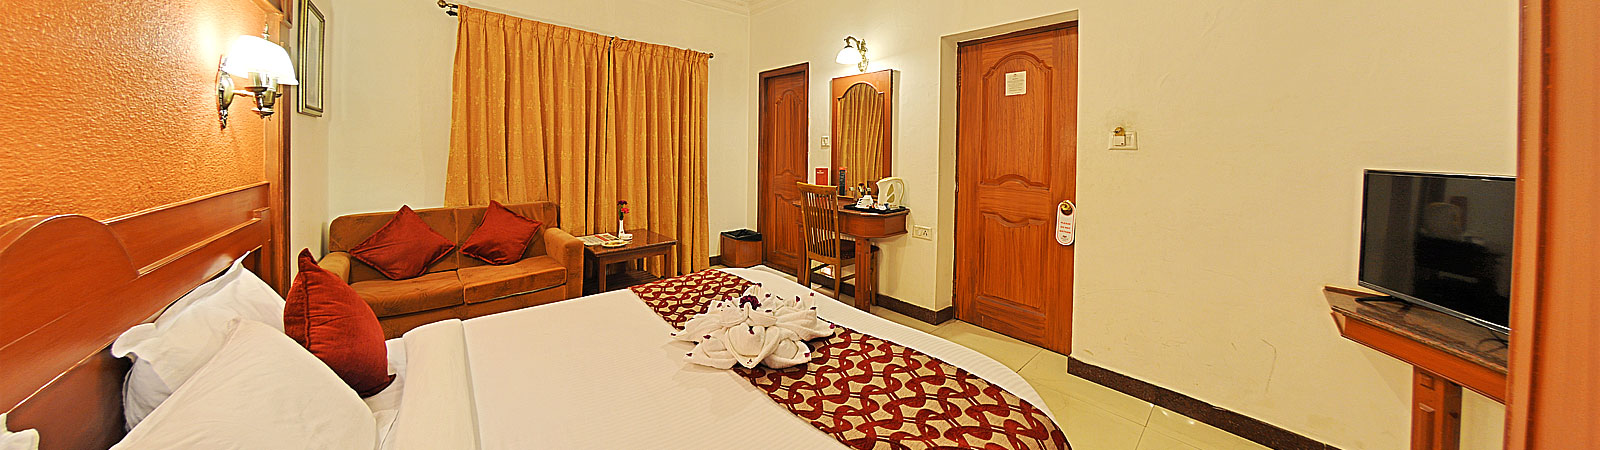 best hotels in ooty